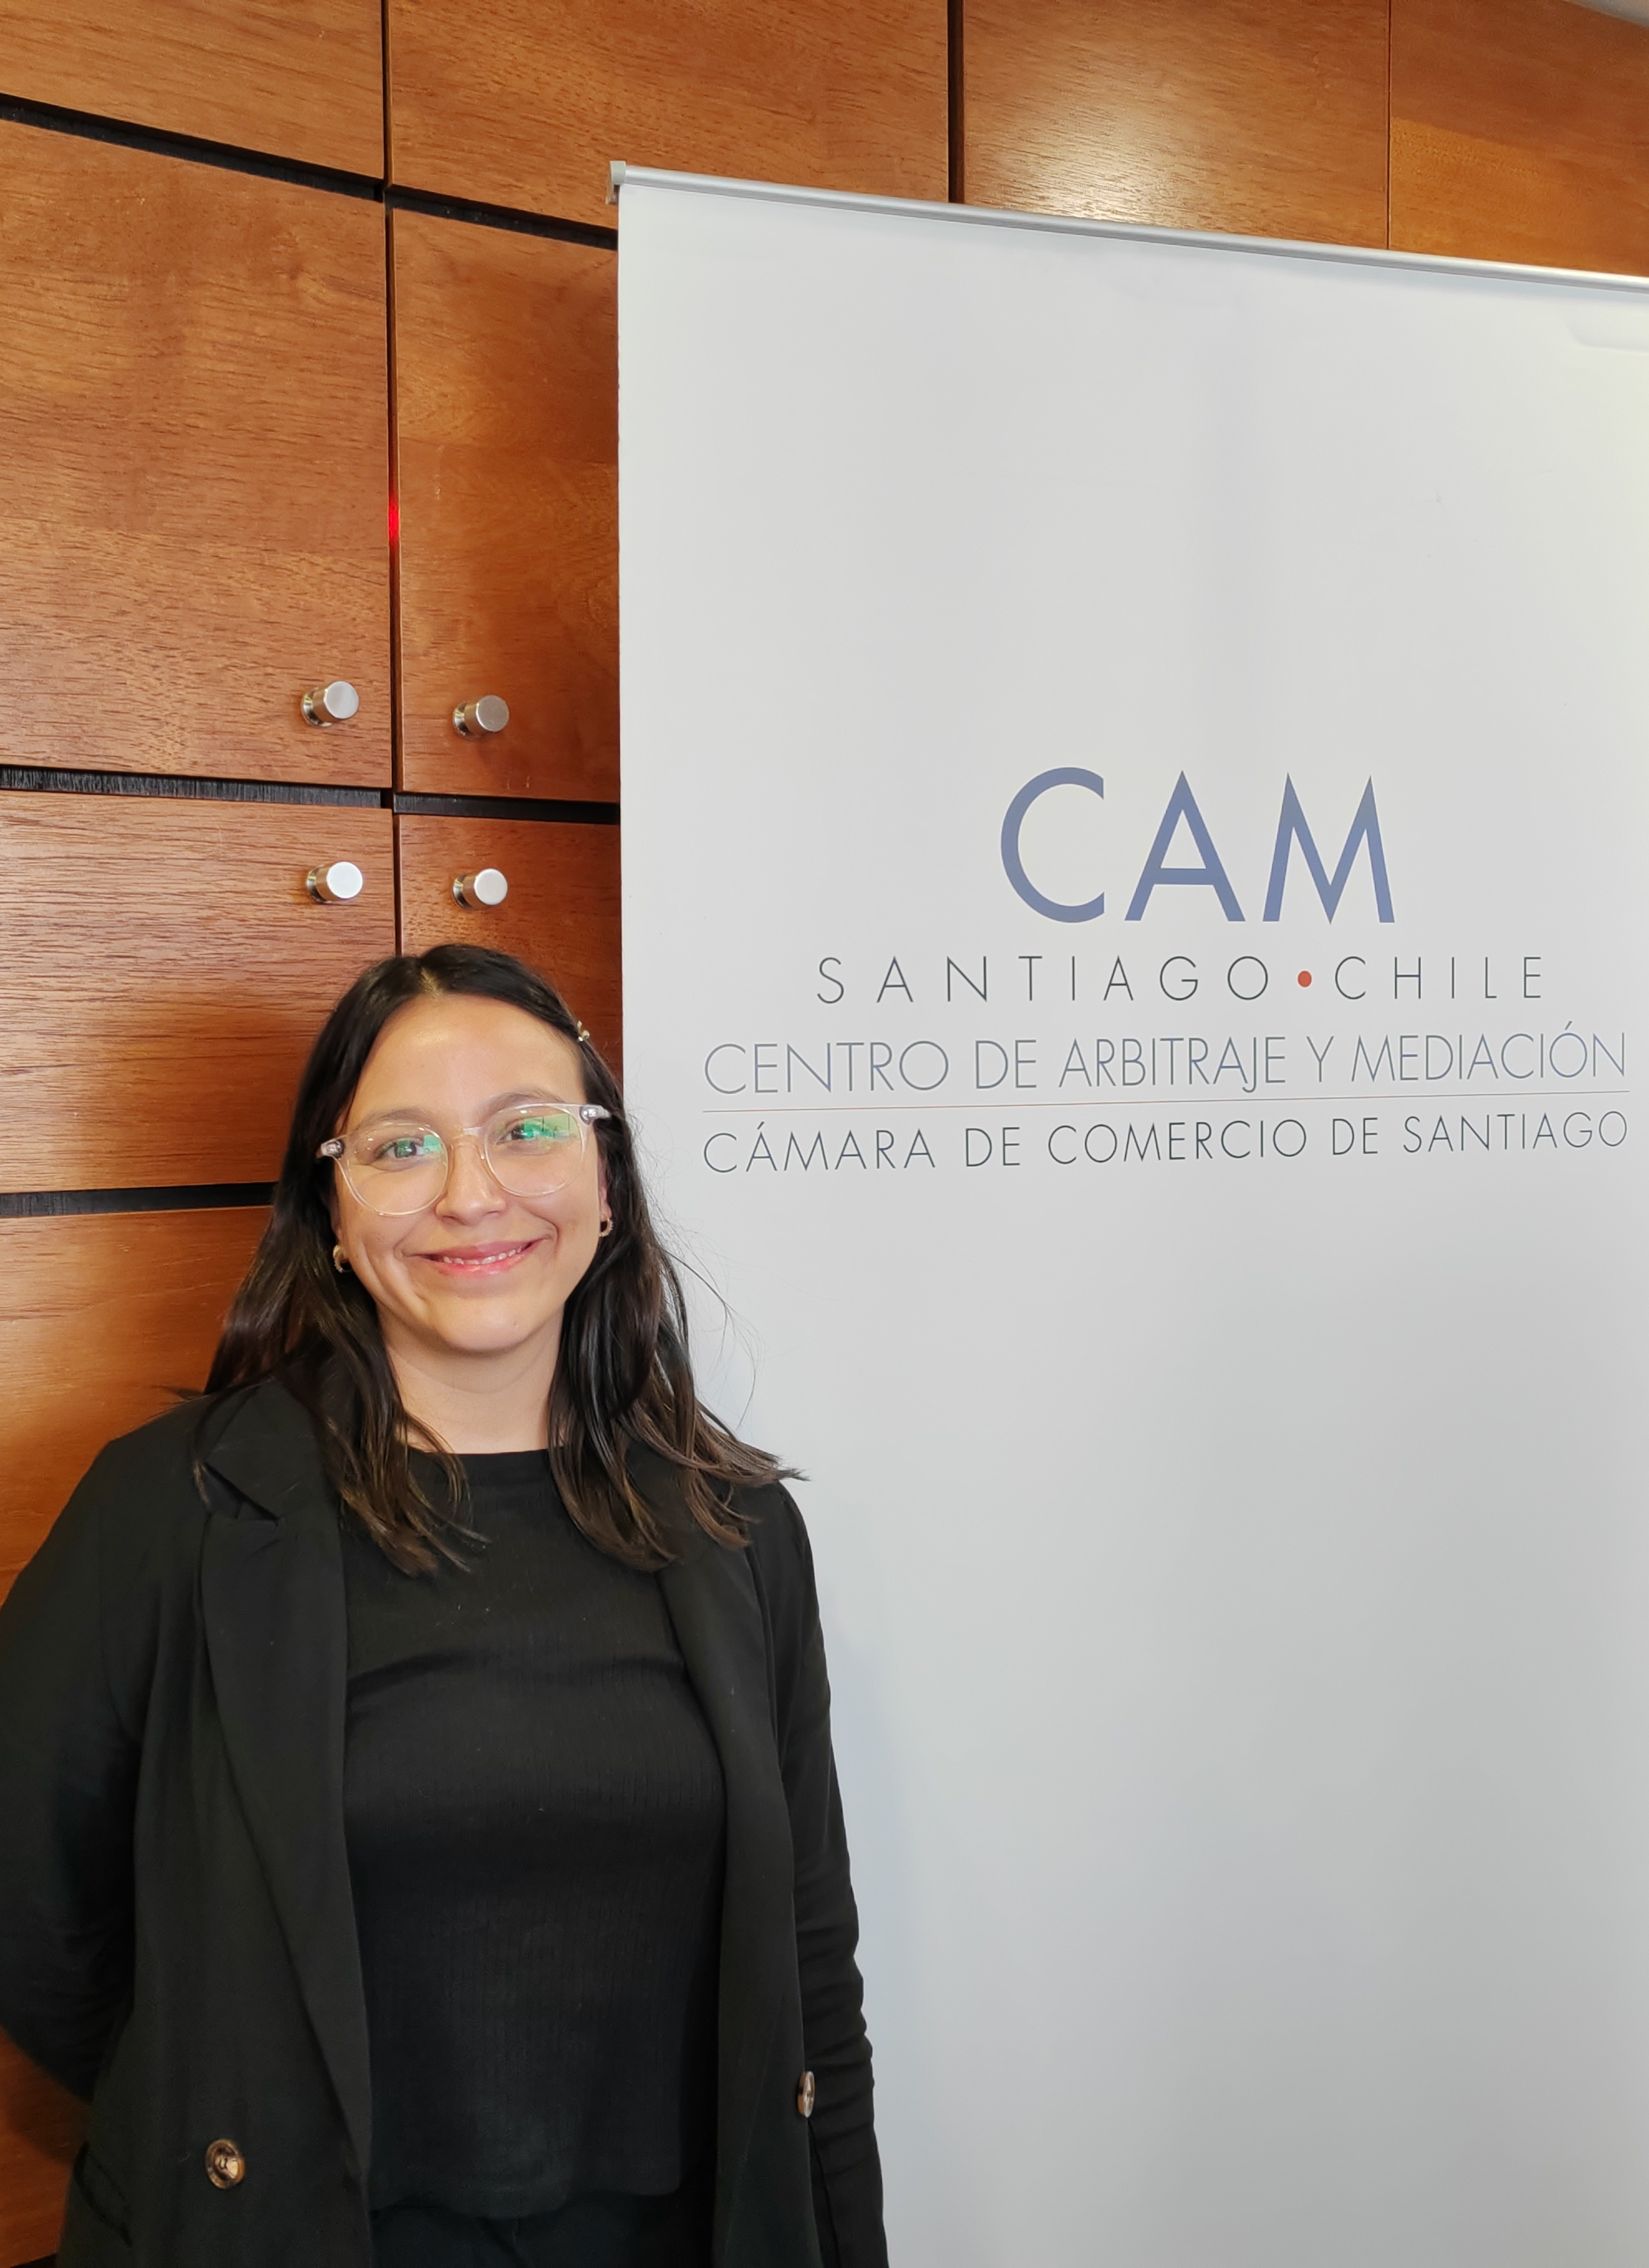 Egresada y Abogada de la Facultad de Derecho de la Universidad de Chile concluyen pasantías en el CAM Santiago